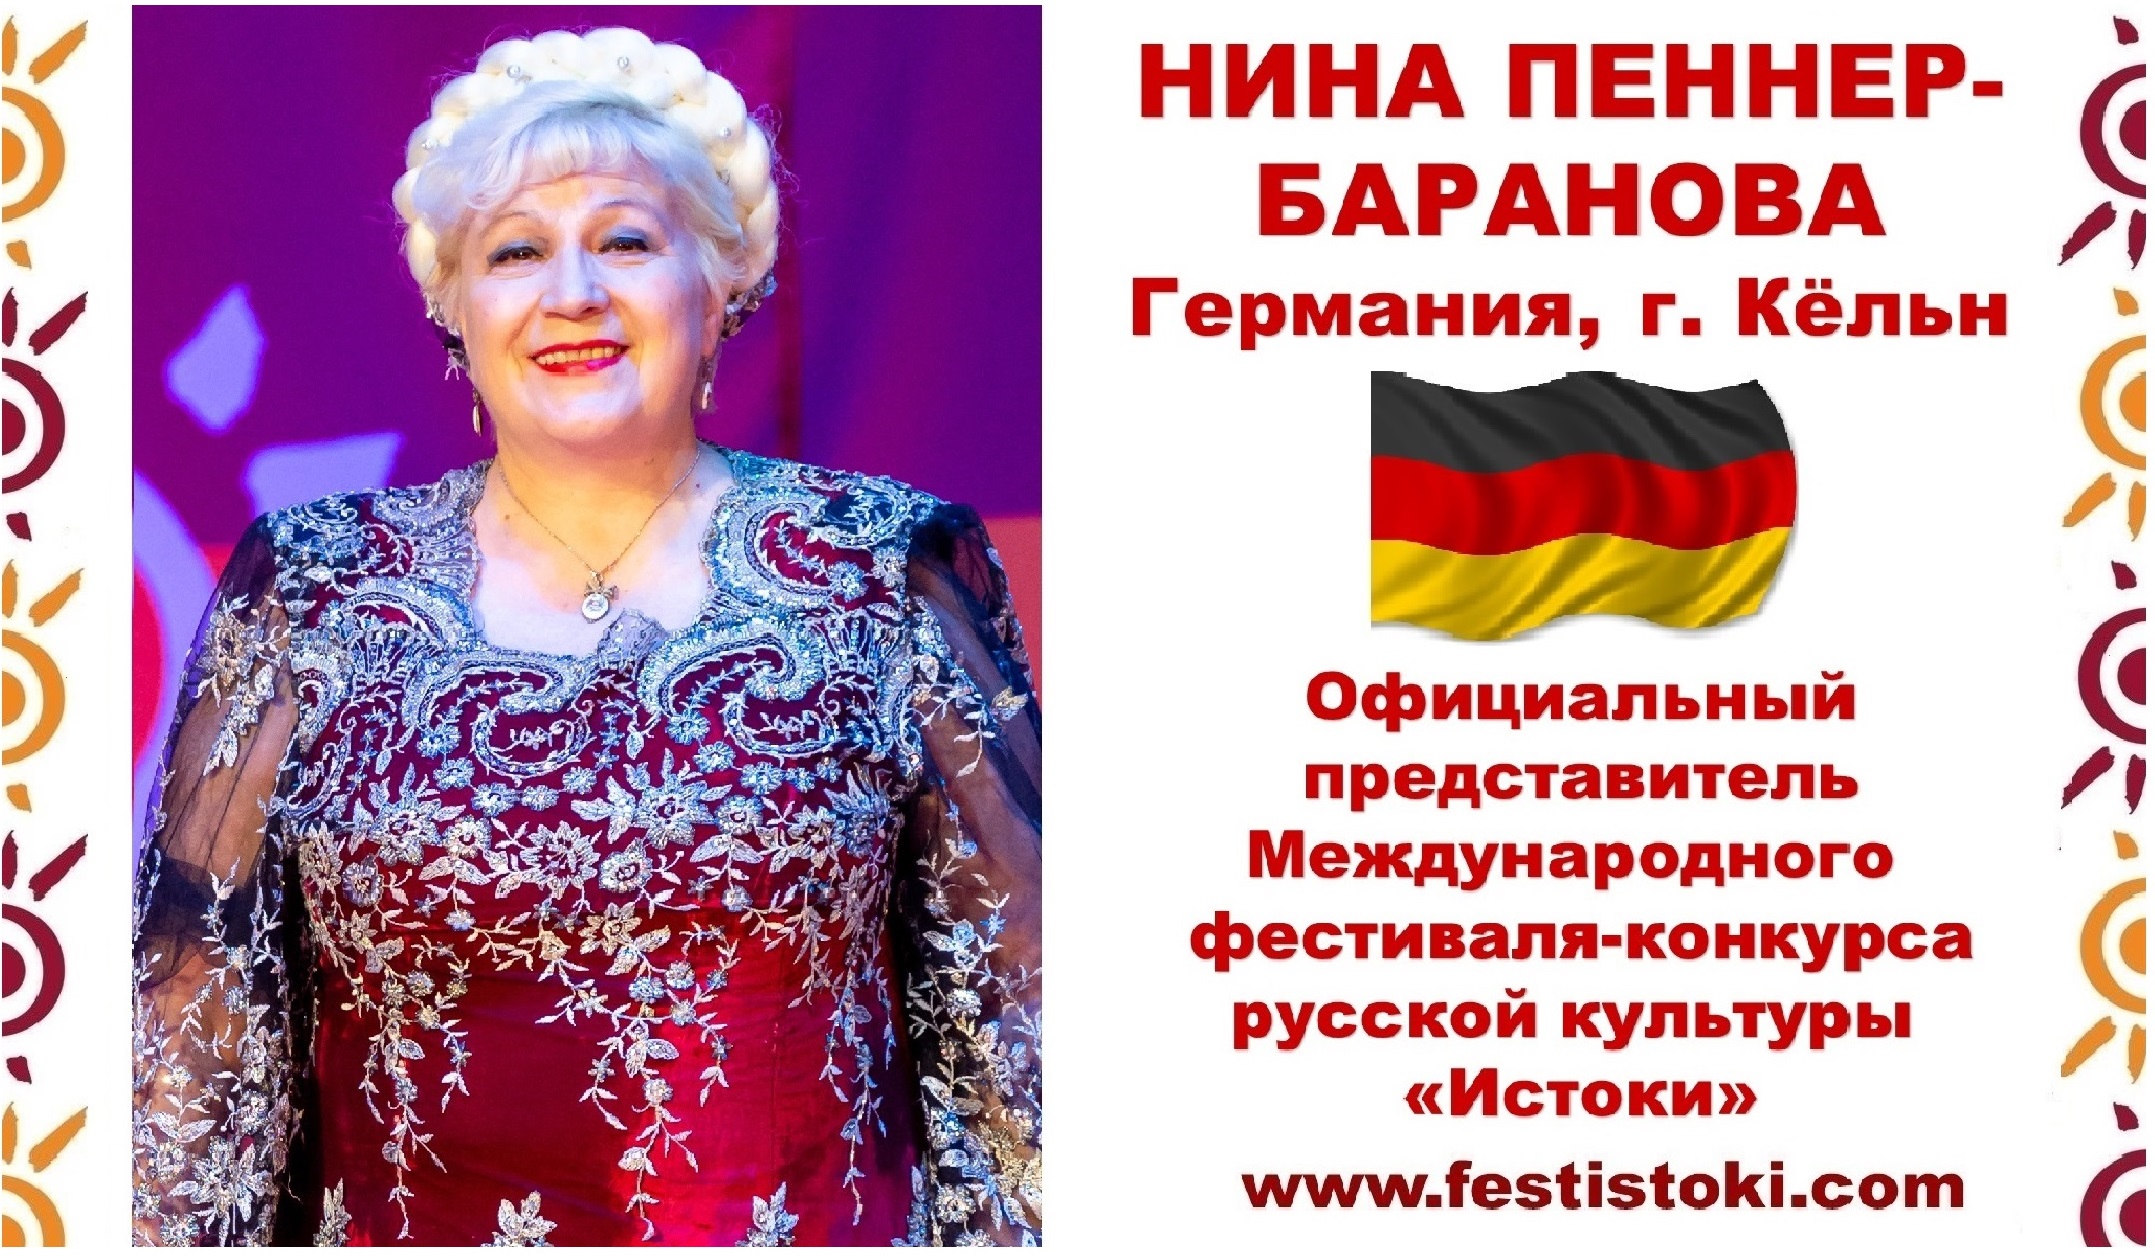 С Днем России! Поздравление Нины Пеннер-Барановой (Германия).